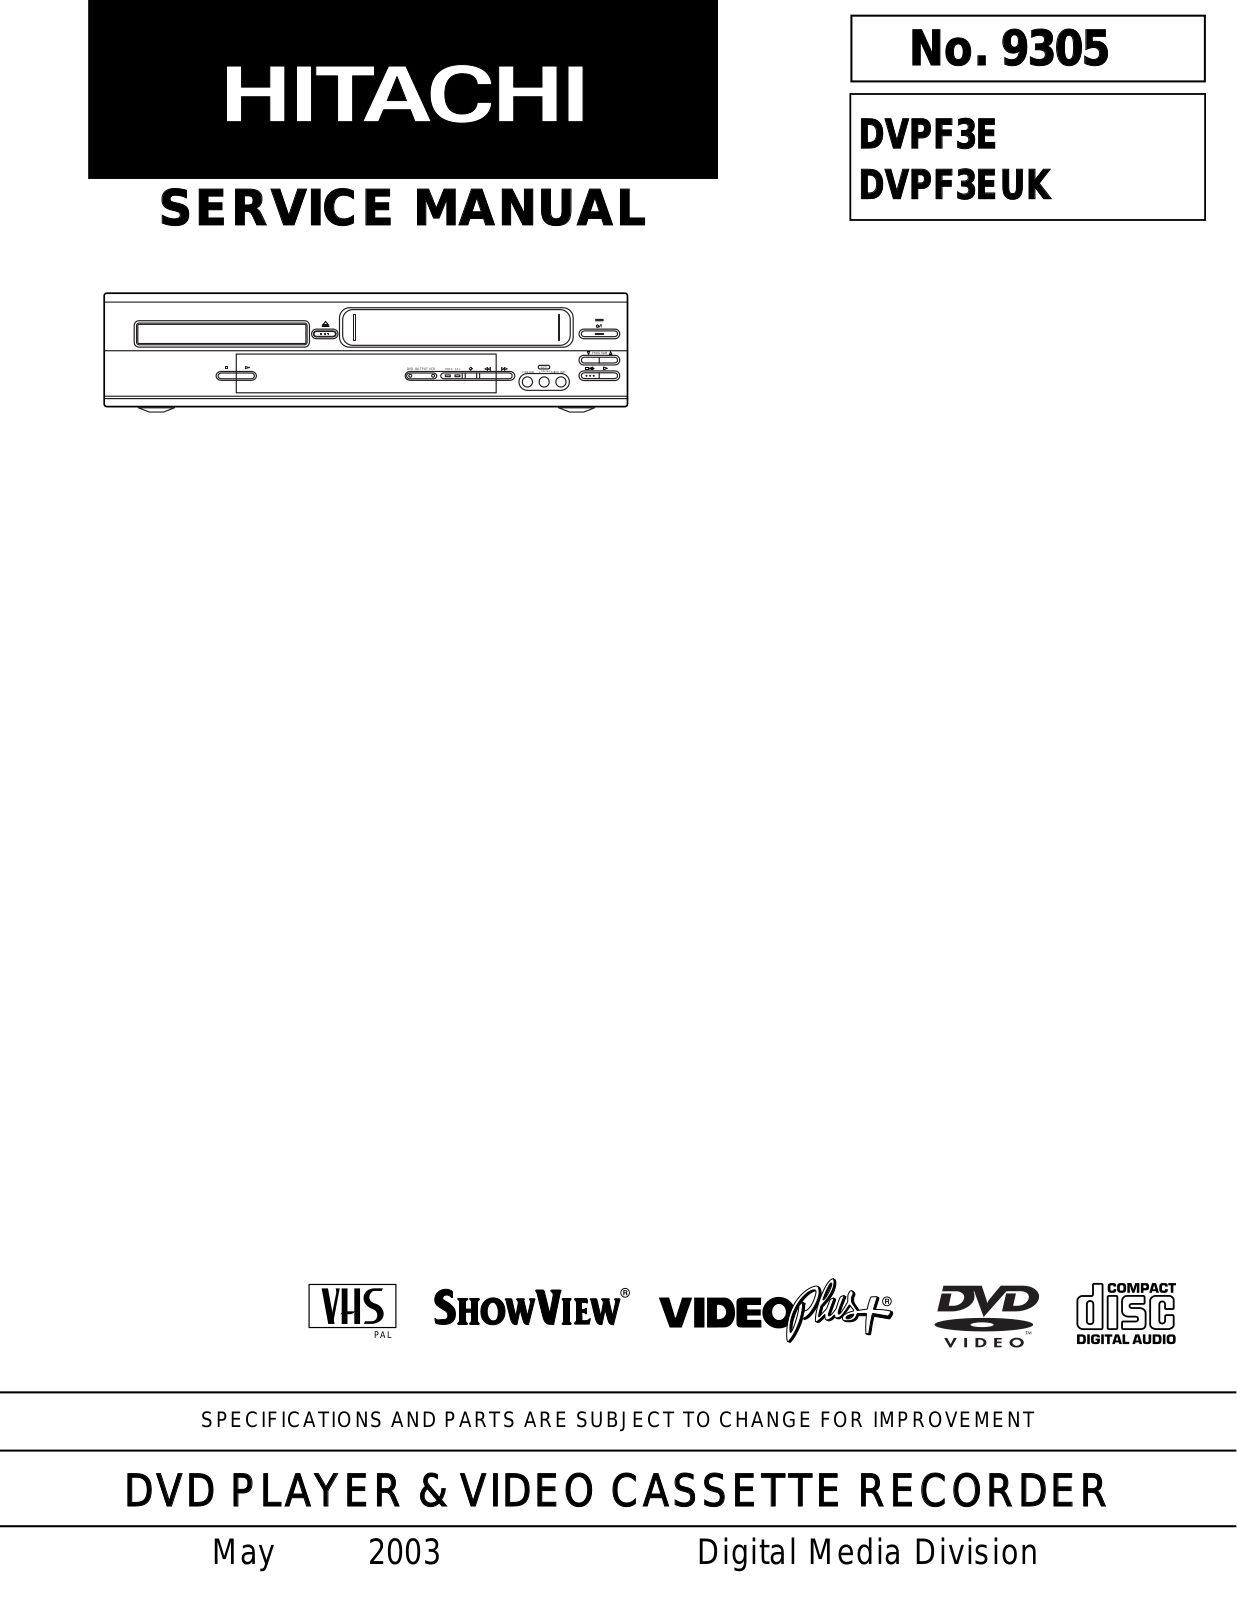 Hitachi DV-PF3E, DV-PF3EUK Service Manual